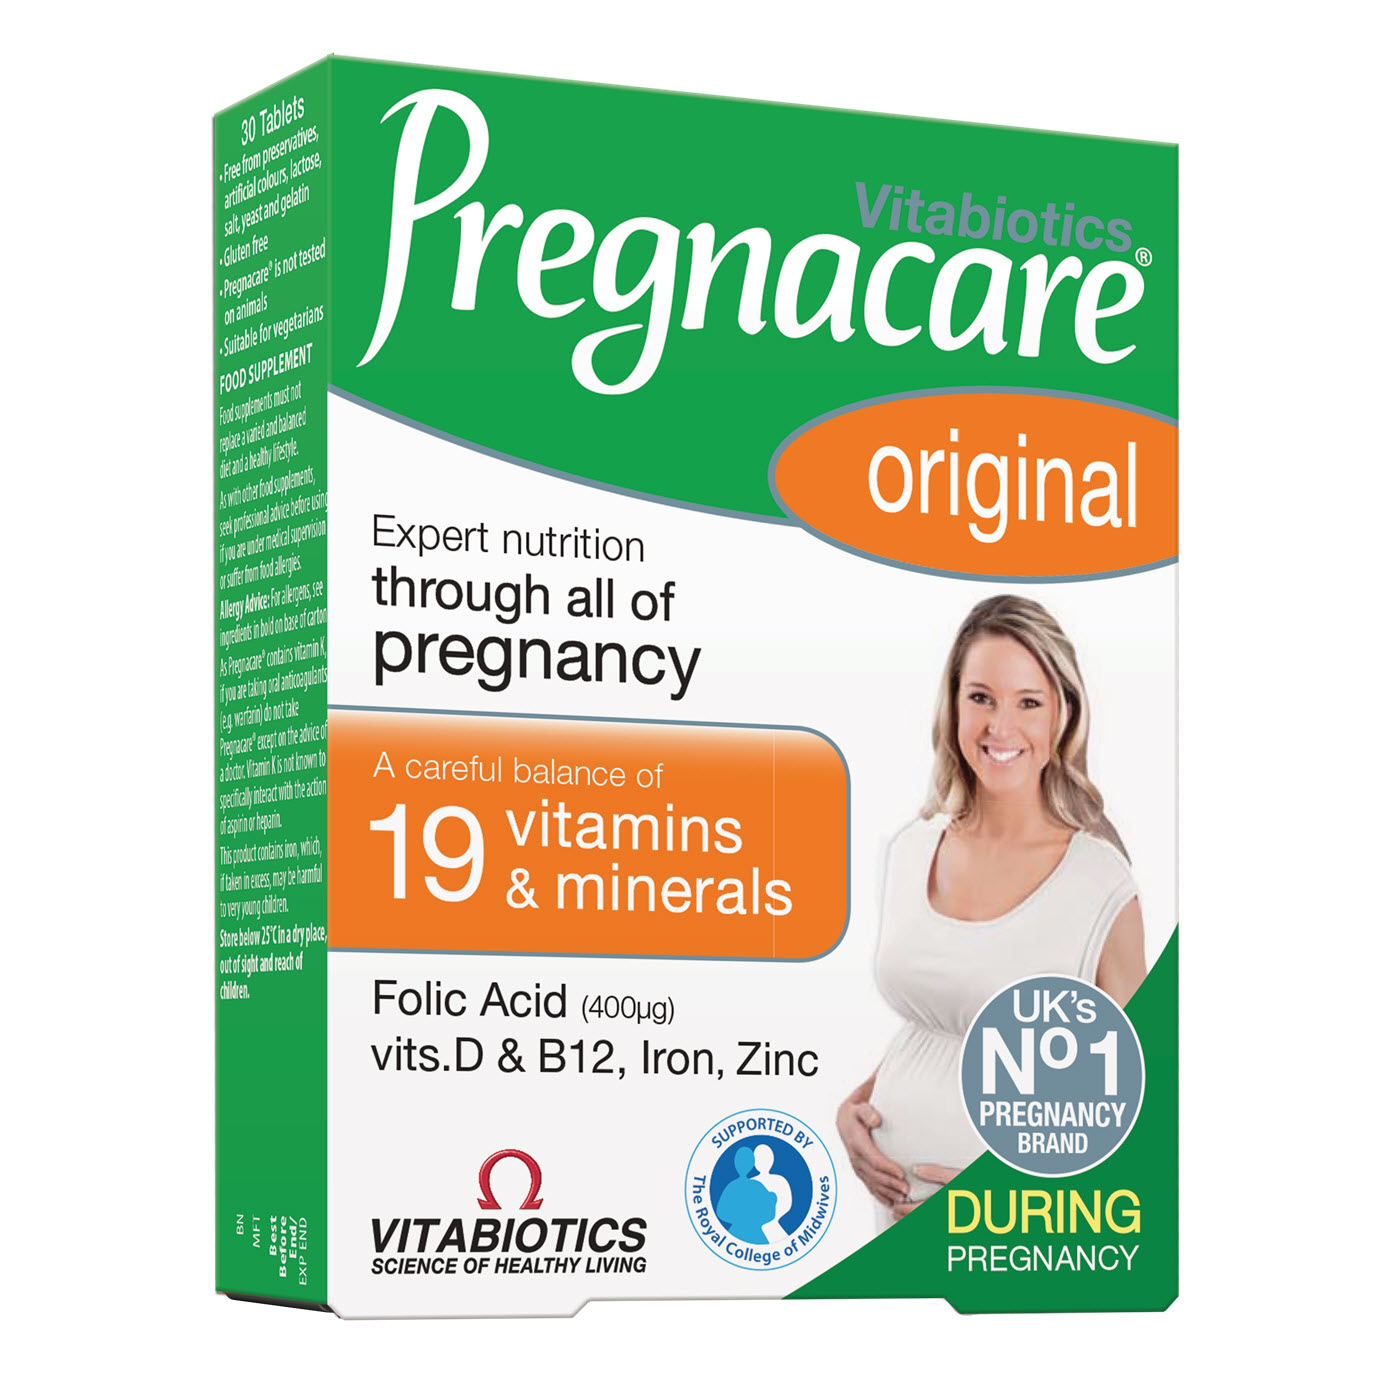 Giới thiệu thuốc bầu pregnacare original cho thai kỳ khỏe mạnh